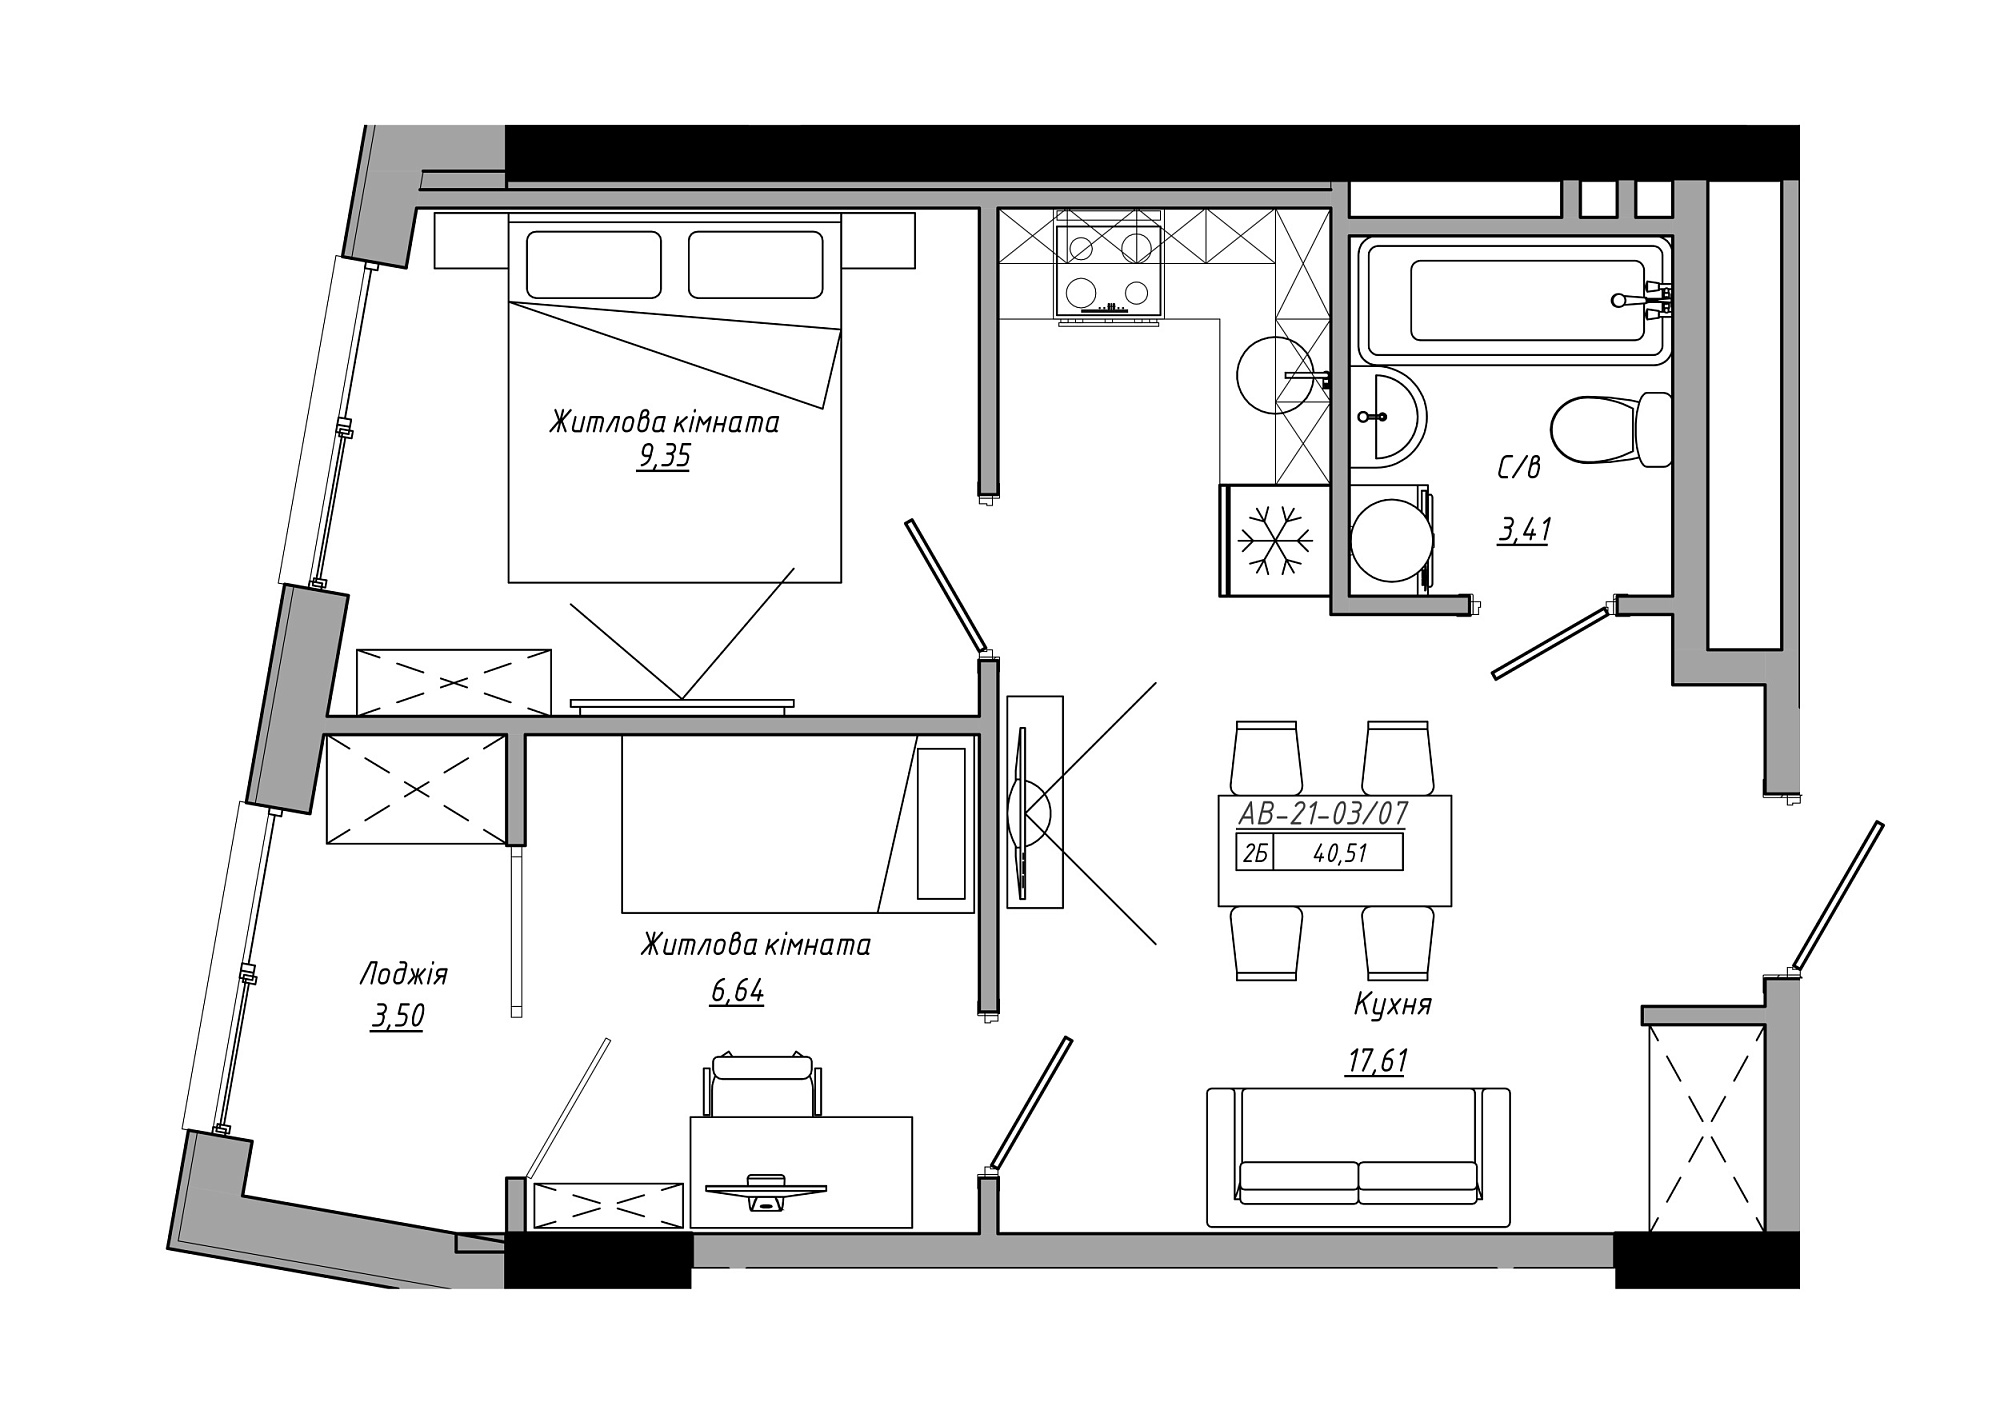 Планування 2-к квартира площею 40.51м2, AB-21-03/00007.